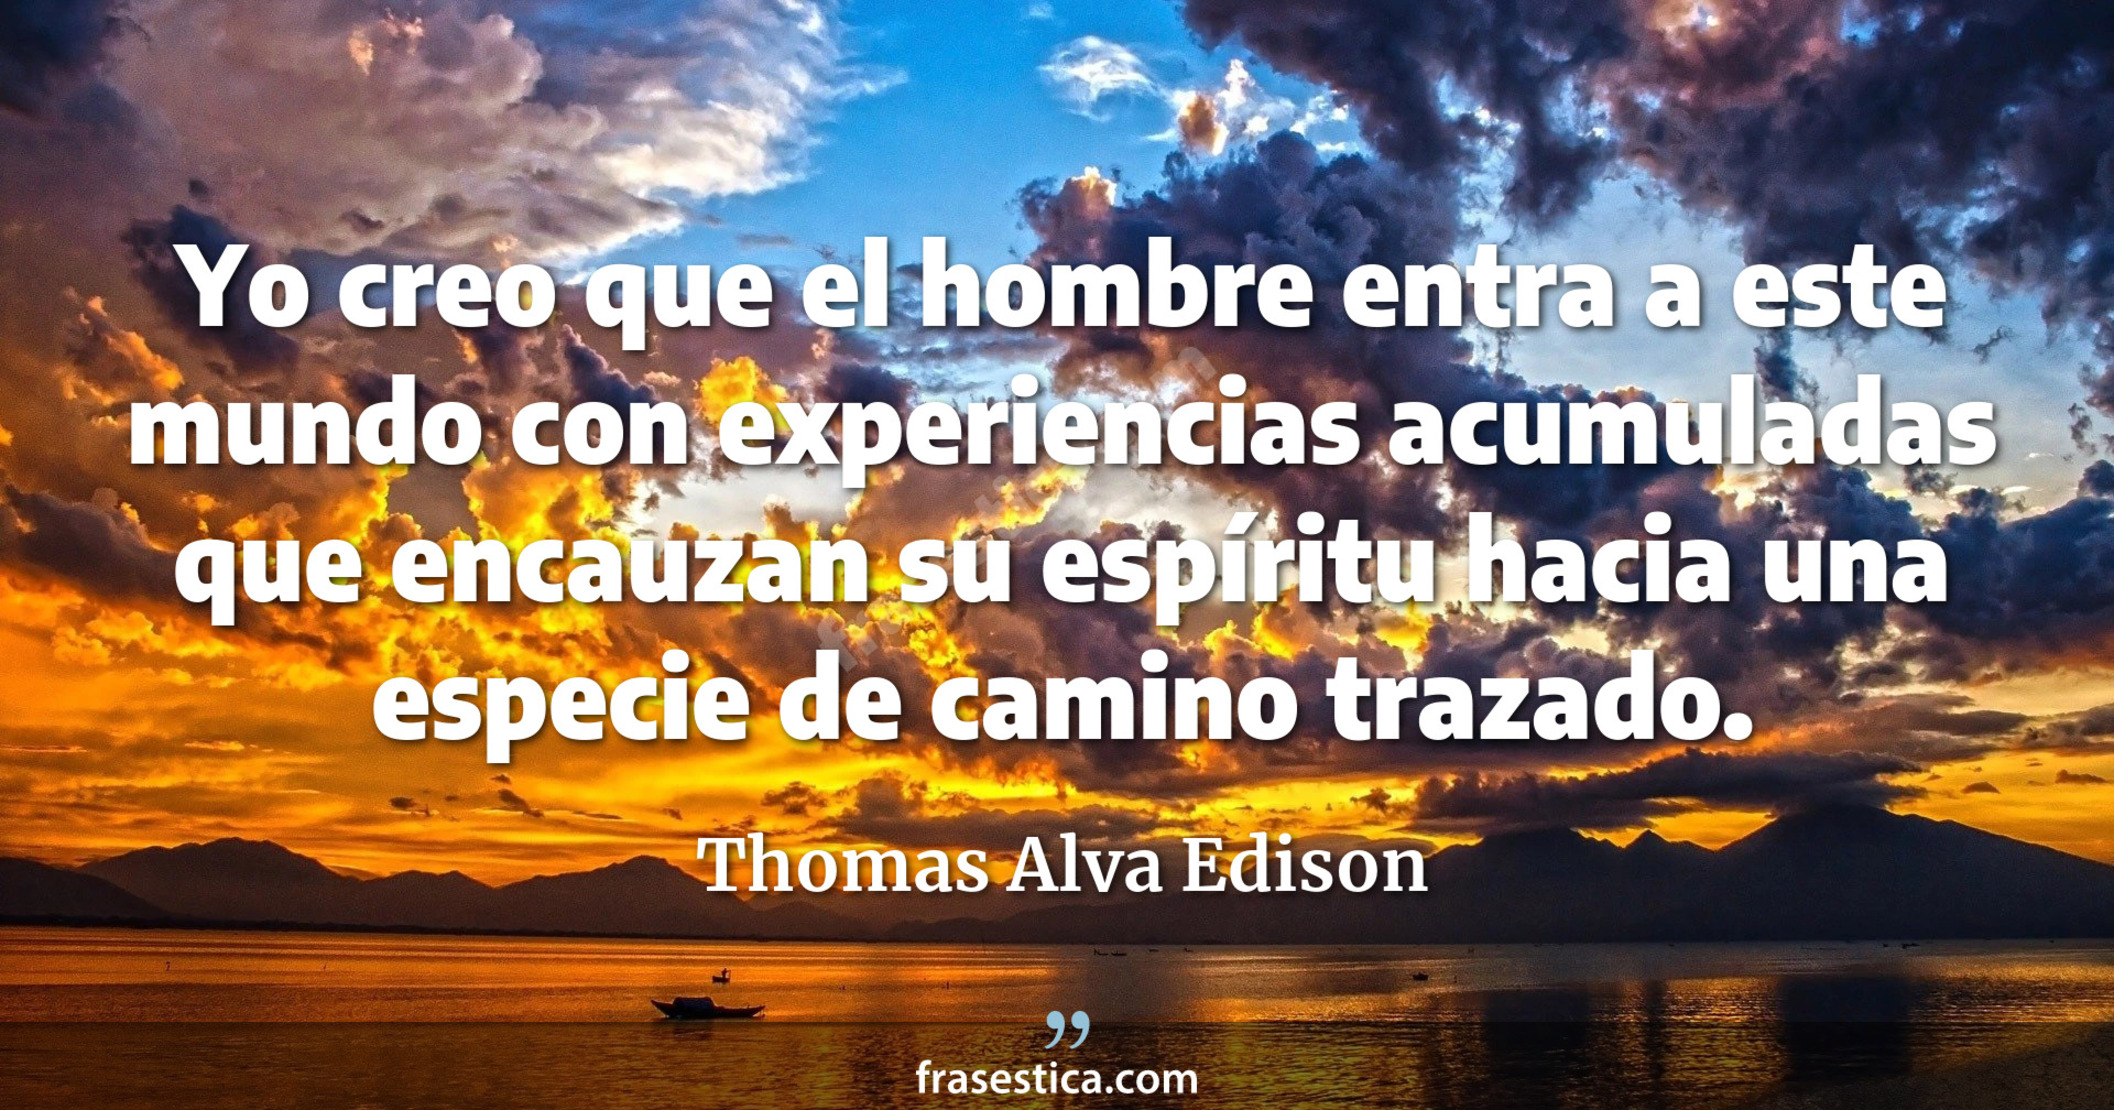 Yo creo que el hombre entra a este mundo con experiencias acumuladas que encauzan su espíritu hacia una especie de camino trazado. - Thomas Alva Edison